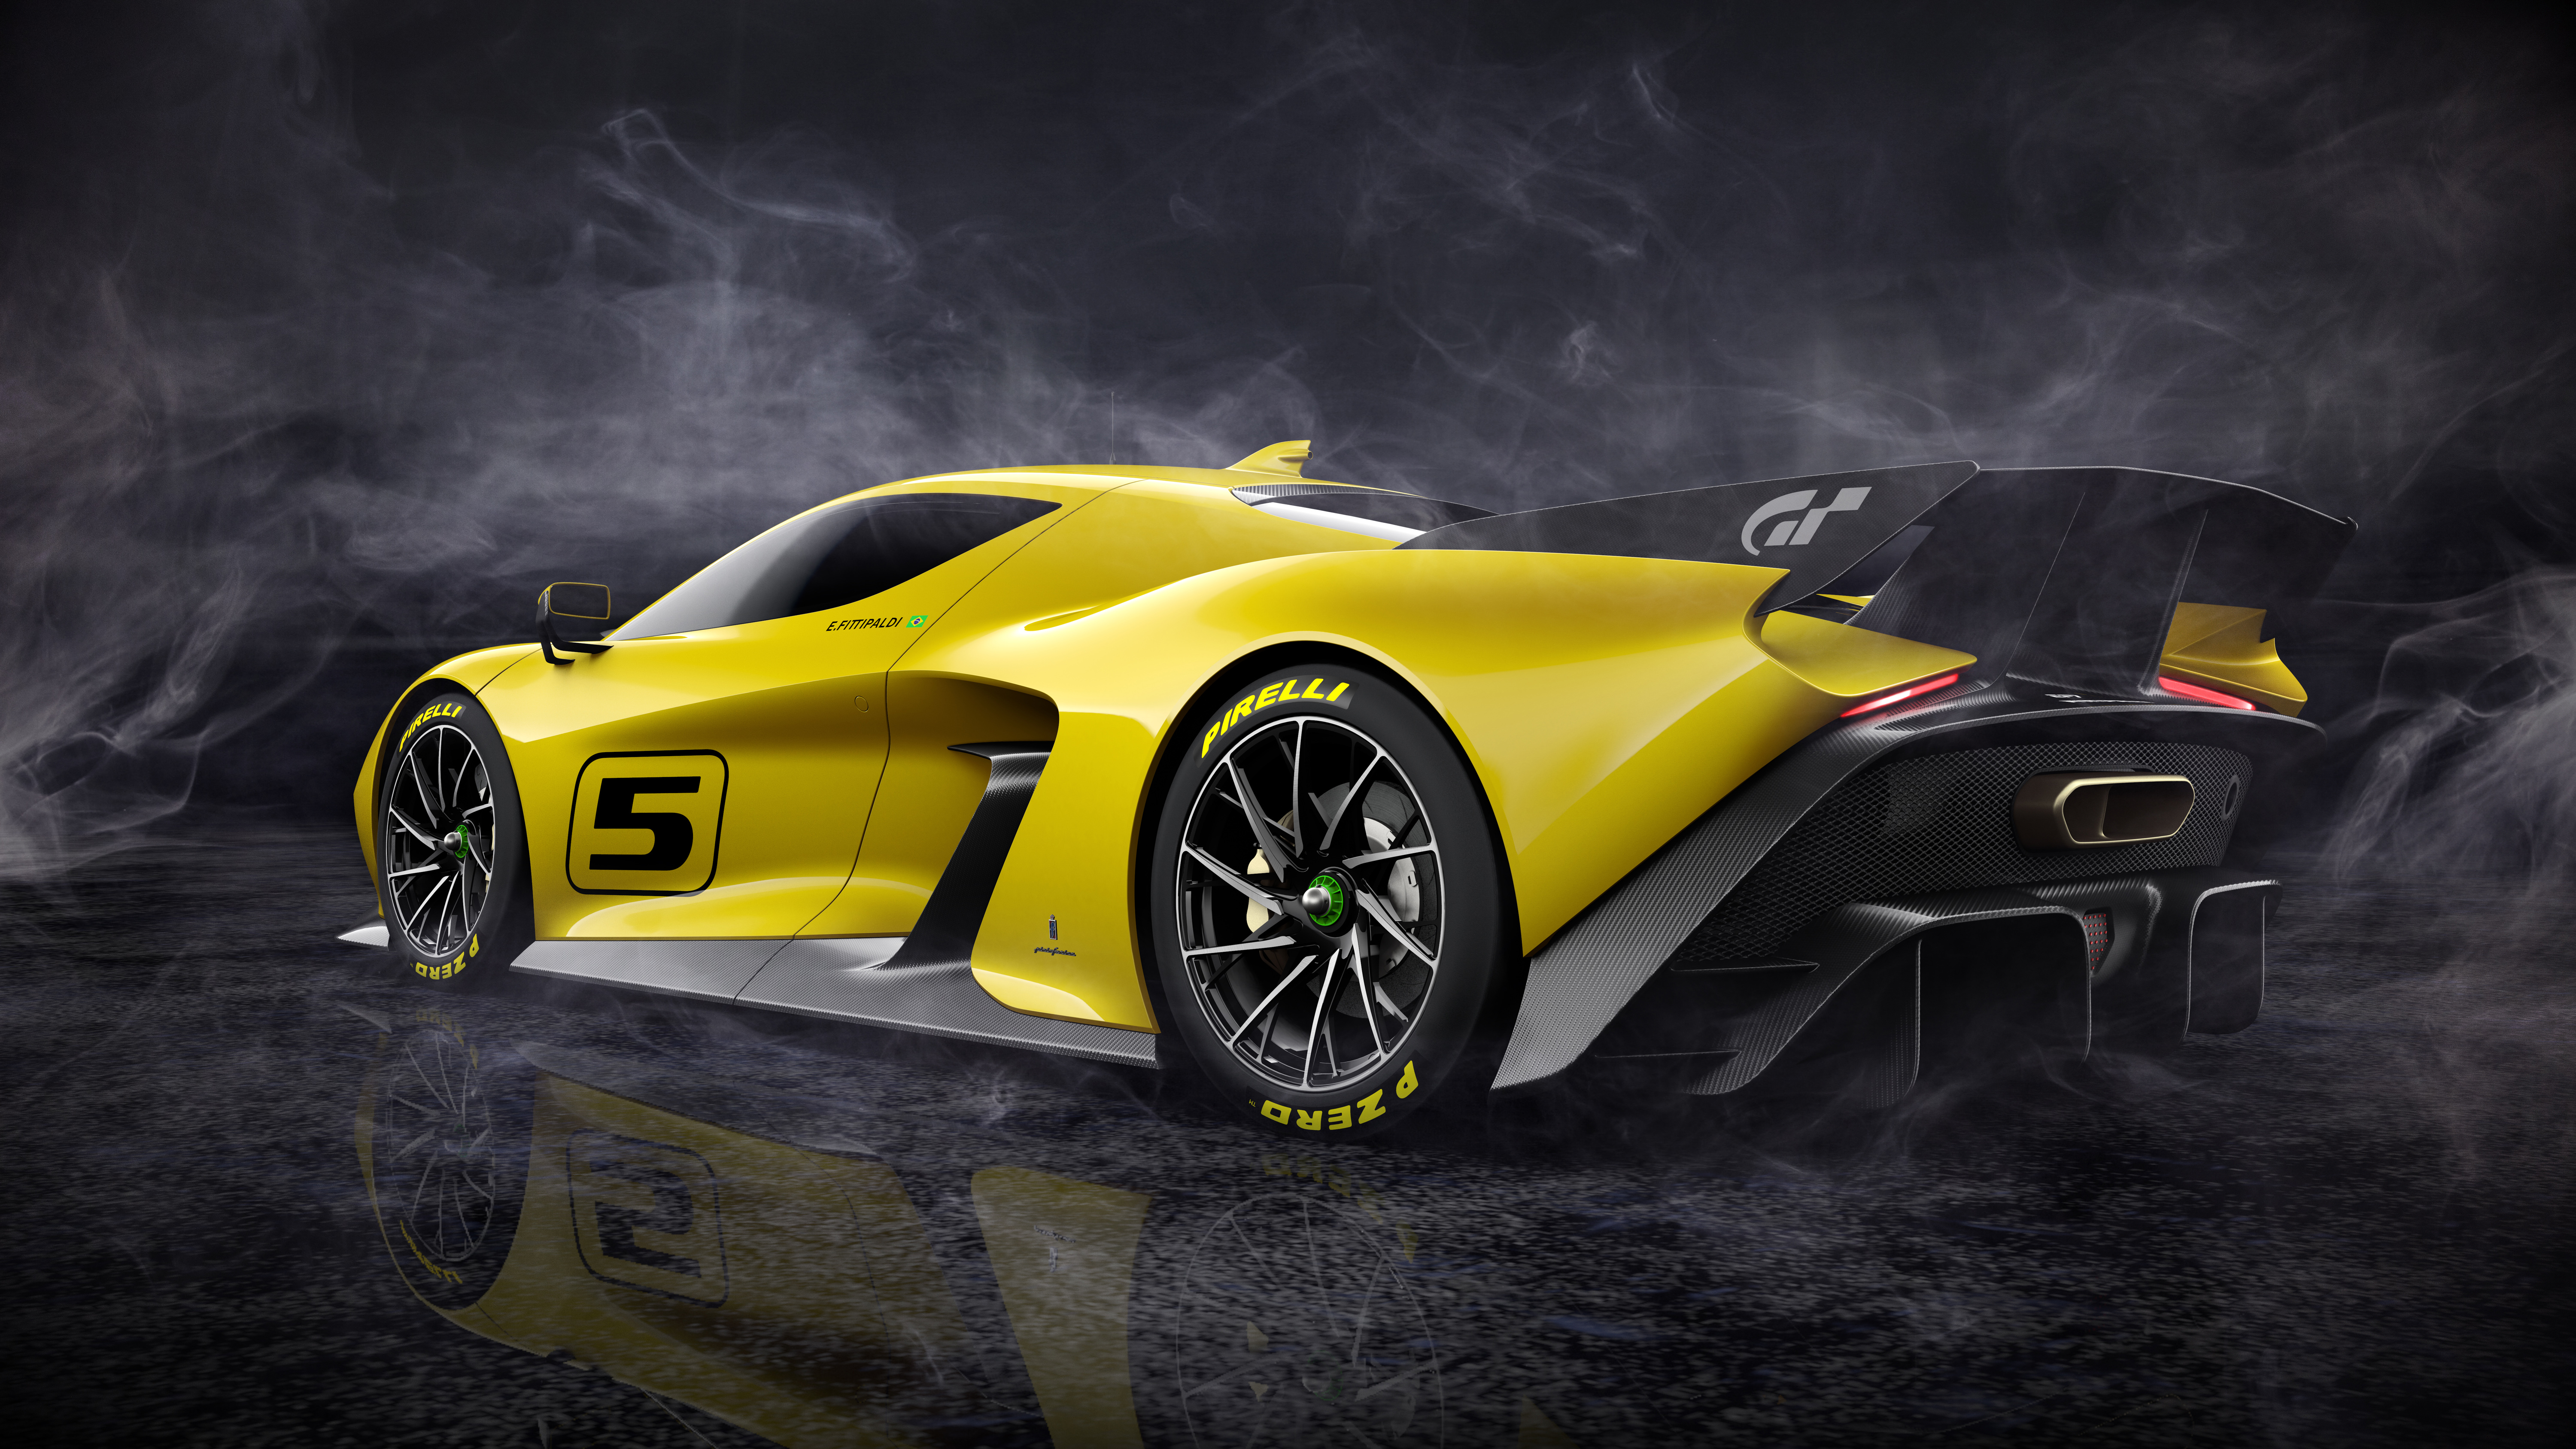 免费照片昏暗烟雾中的黄色菲蒂帕尔迪 E47 Vision Gran Turismo跑车